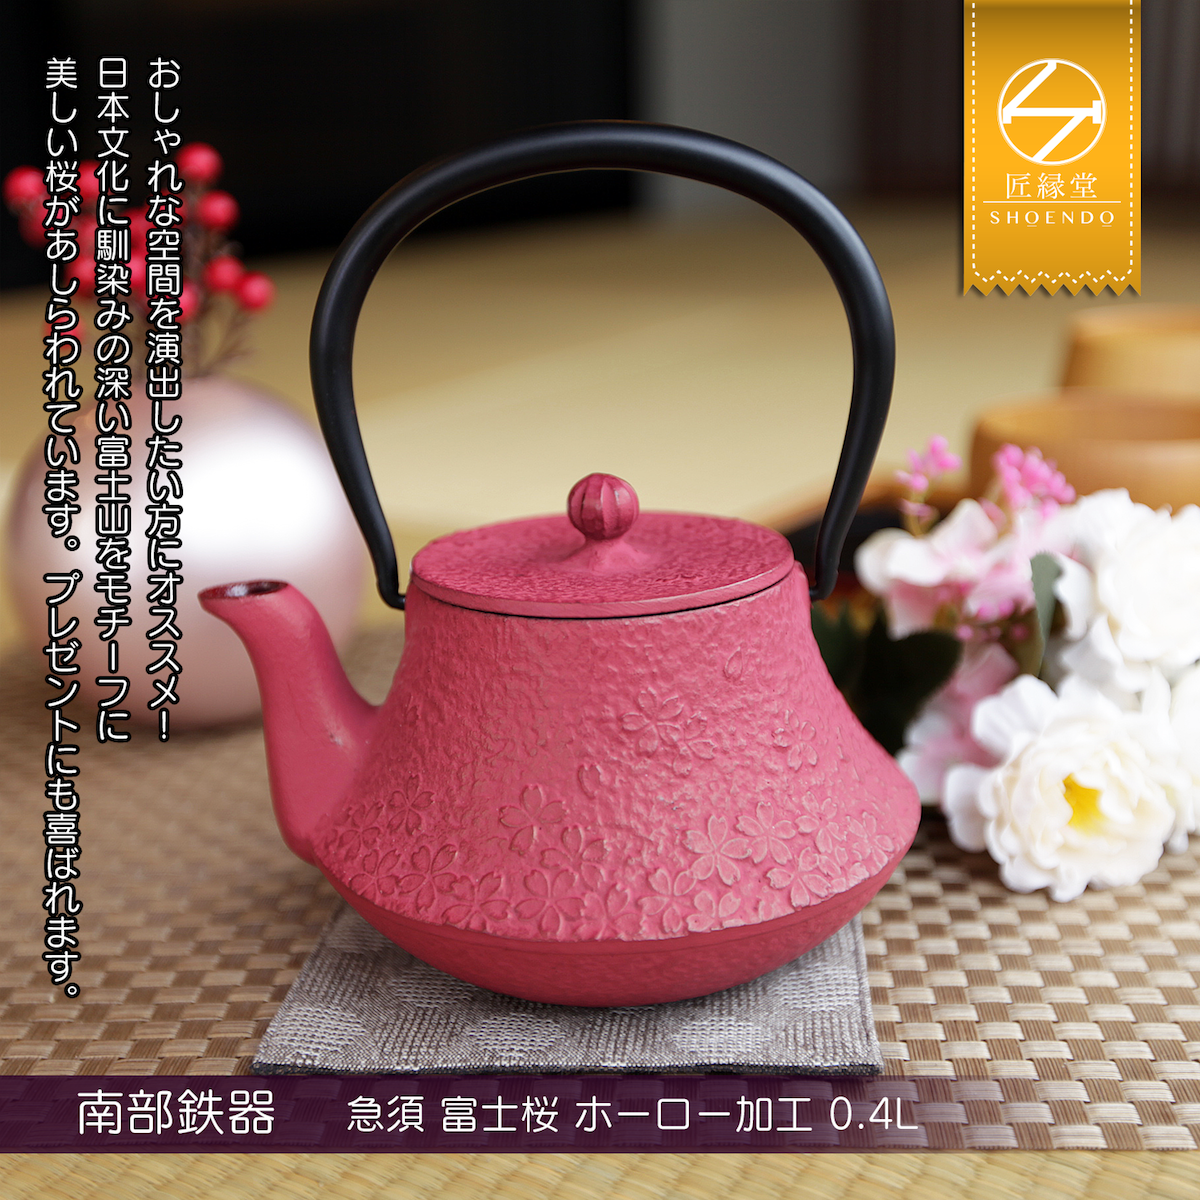 Fujita Kyusu TeaPot Kettle Nanbu Nambu Tekki Ironware Fujisakura 0.4L Japan